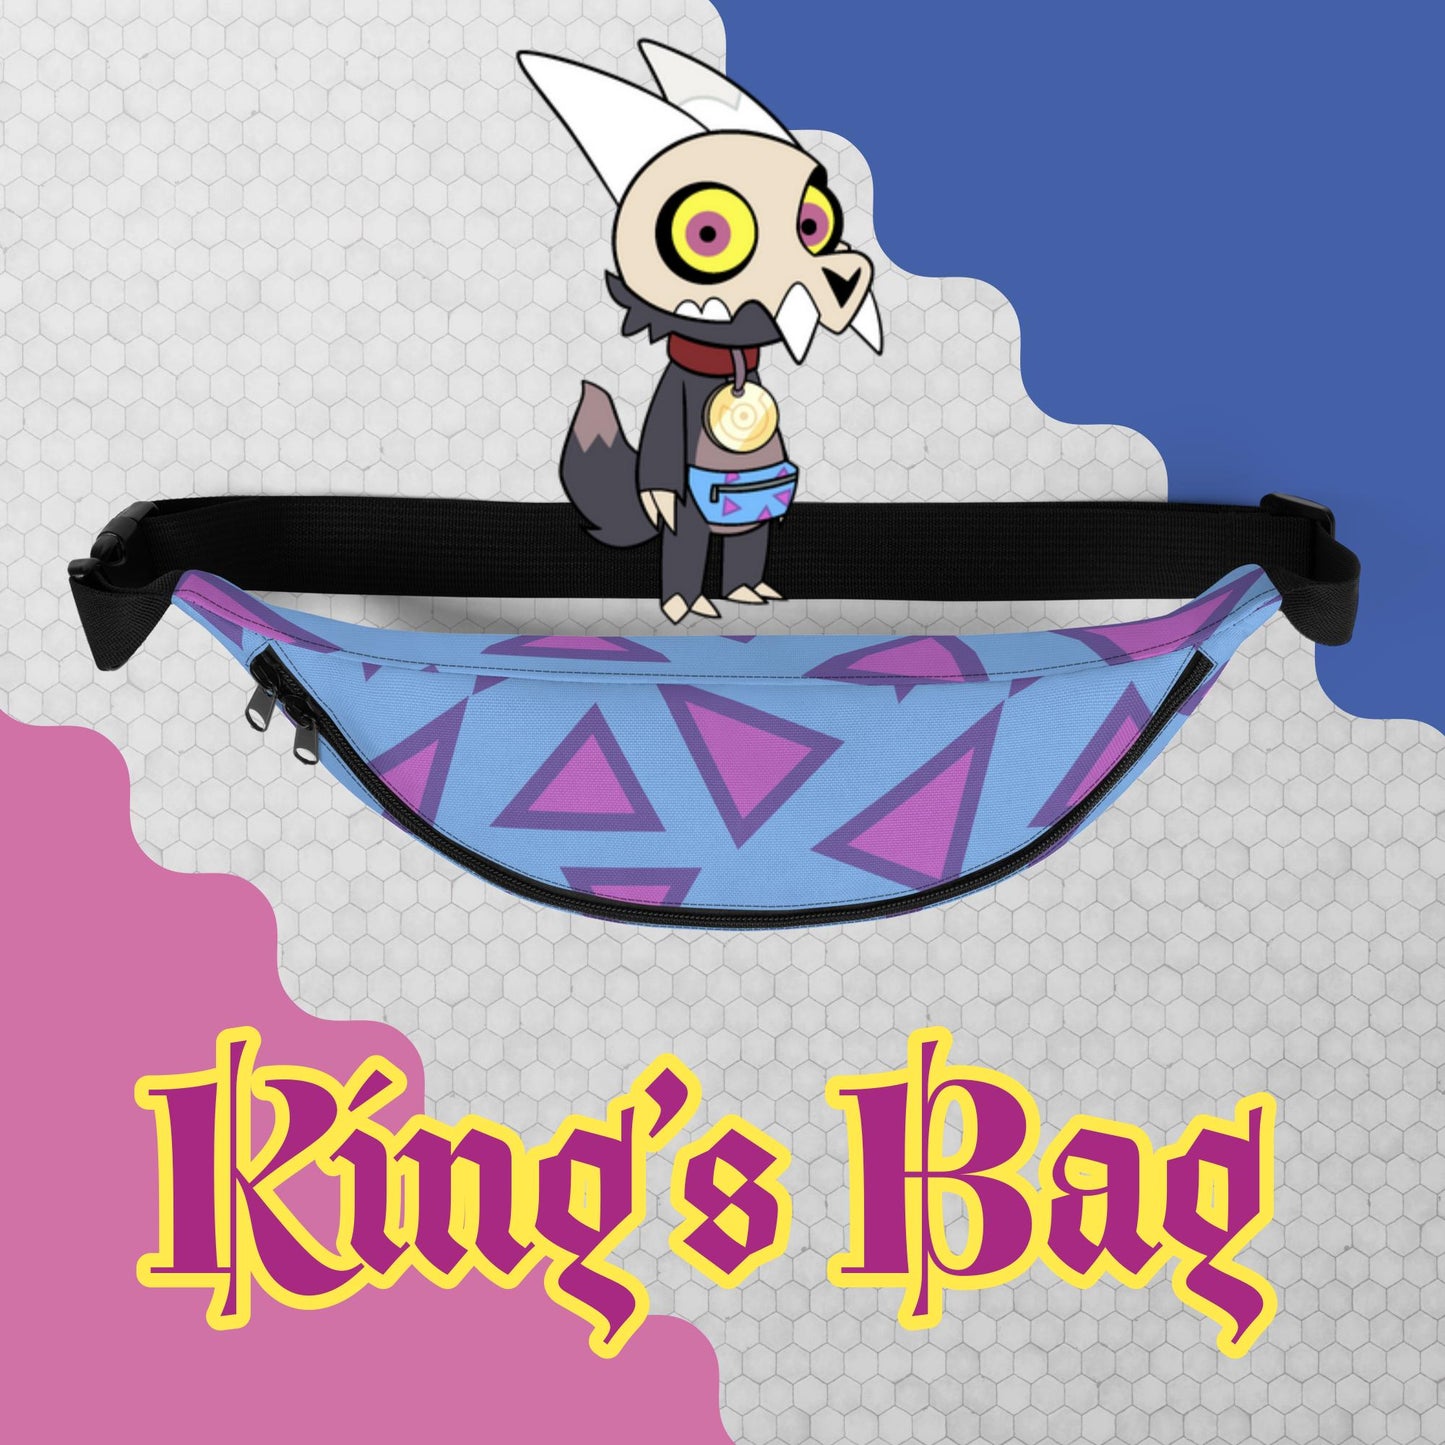 King’s Bag